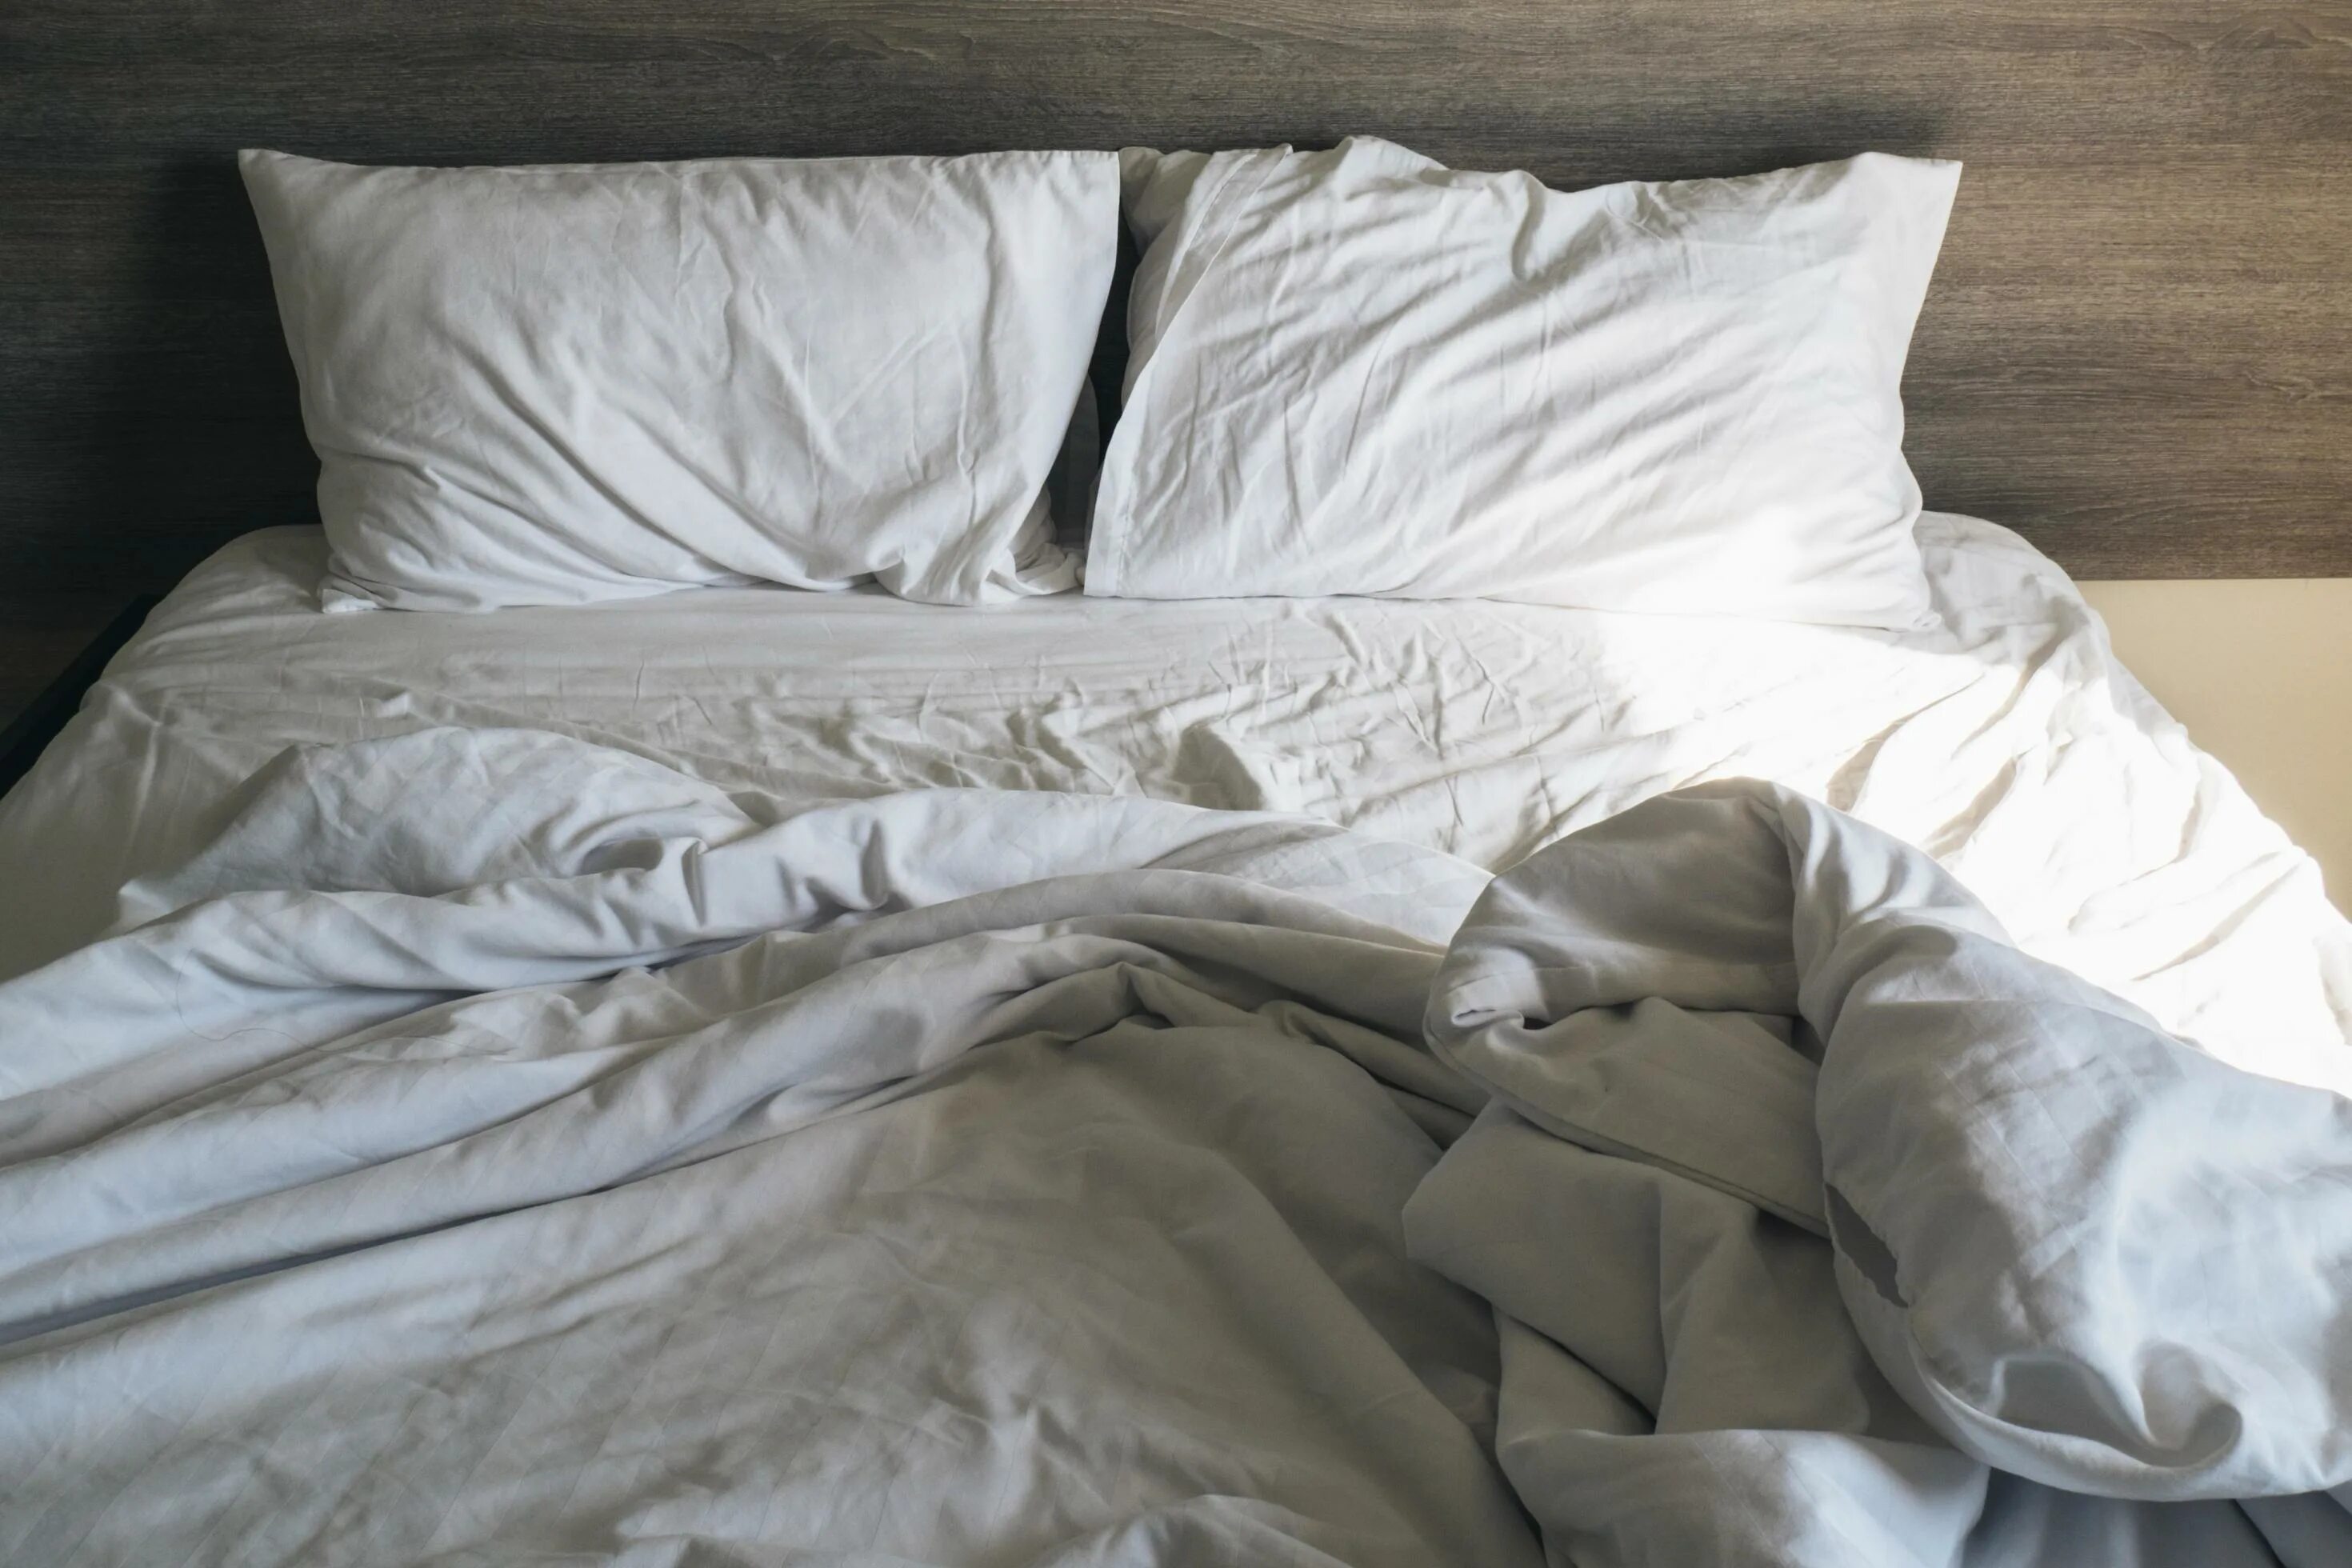 Грязное постельное белье. Кровать постель. Незастеленная кровать. Кровать не застелена. До скрытых встреч на мятых простынях